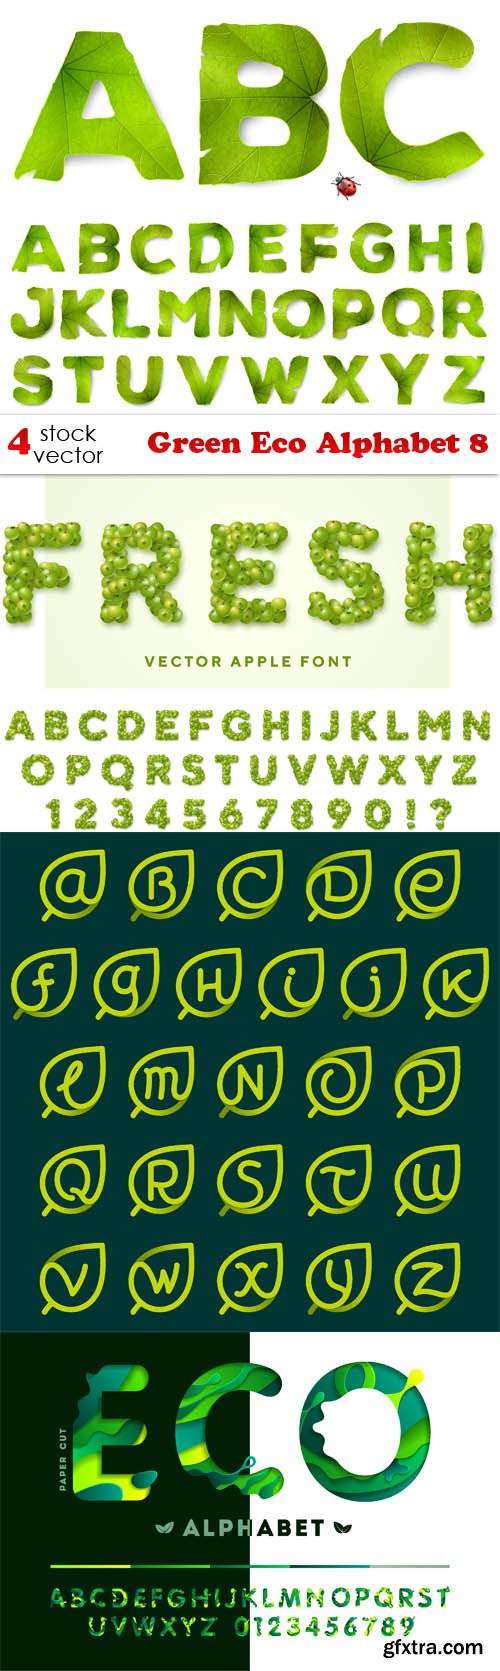 Vectors - Green Eco Alphabet 8